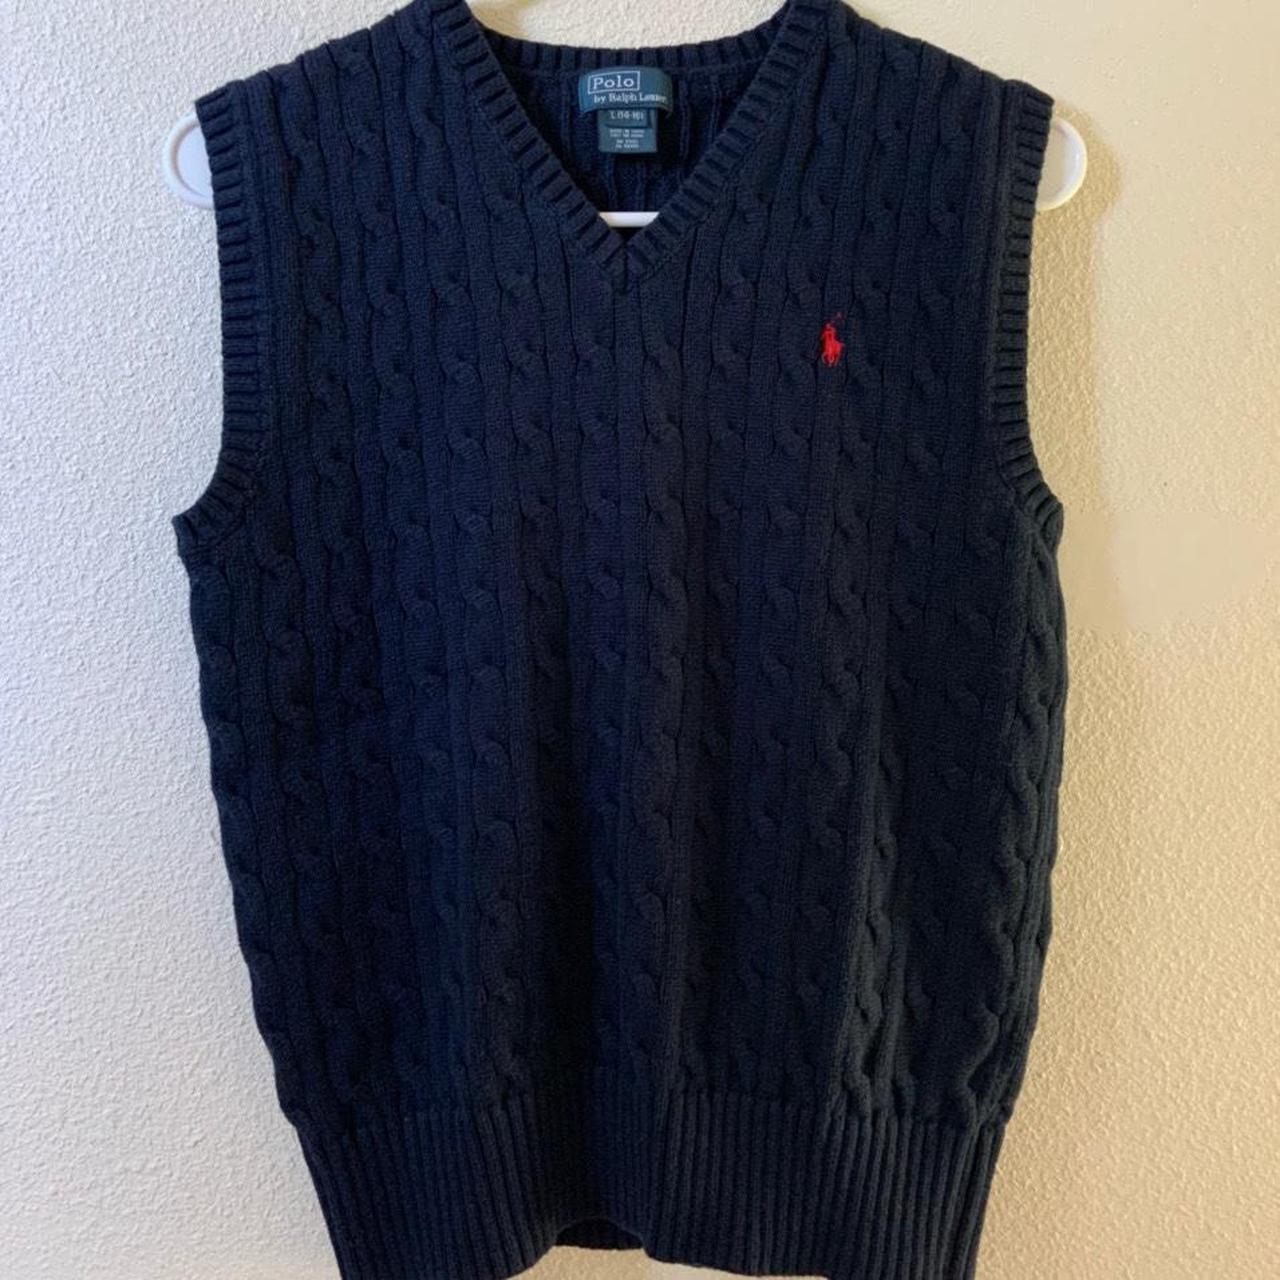 Vintage Ralph Lauren polo vest - thicker knit... - Depop